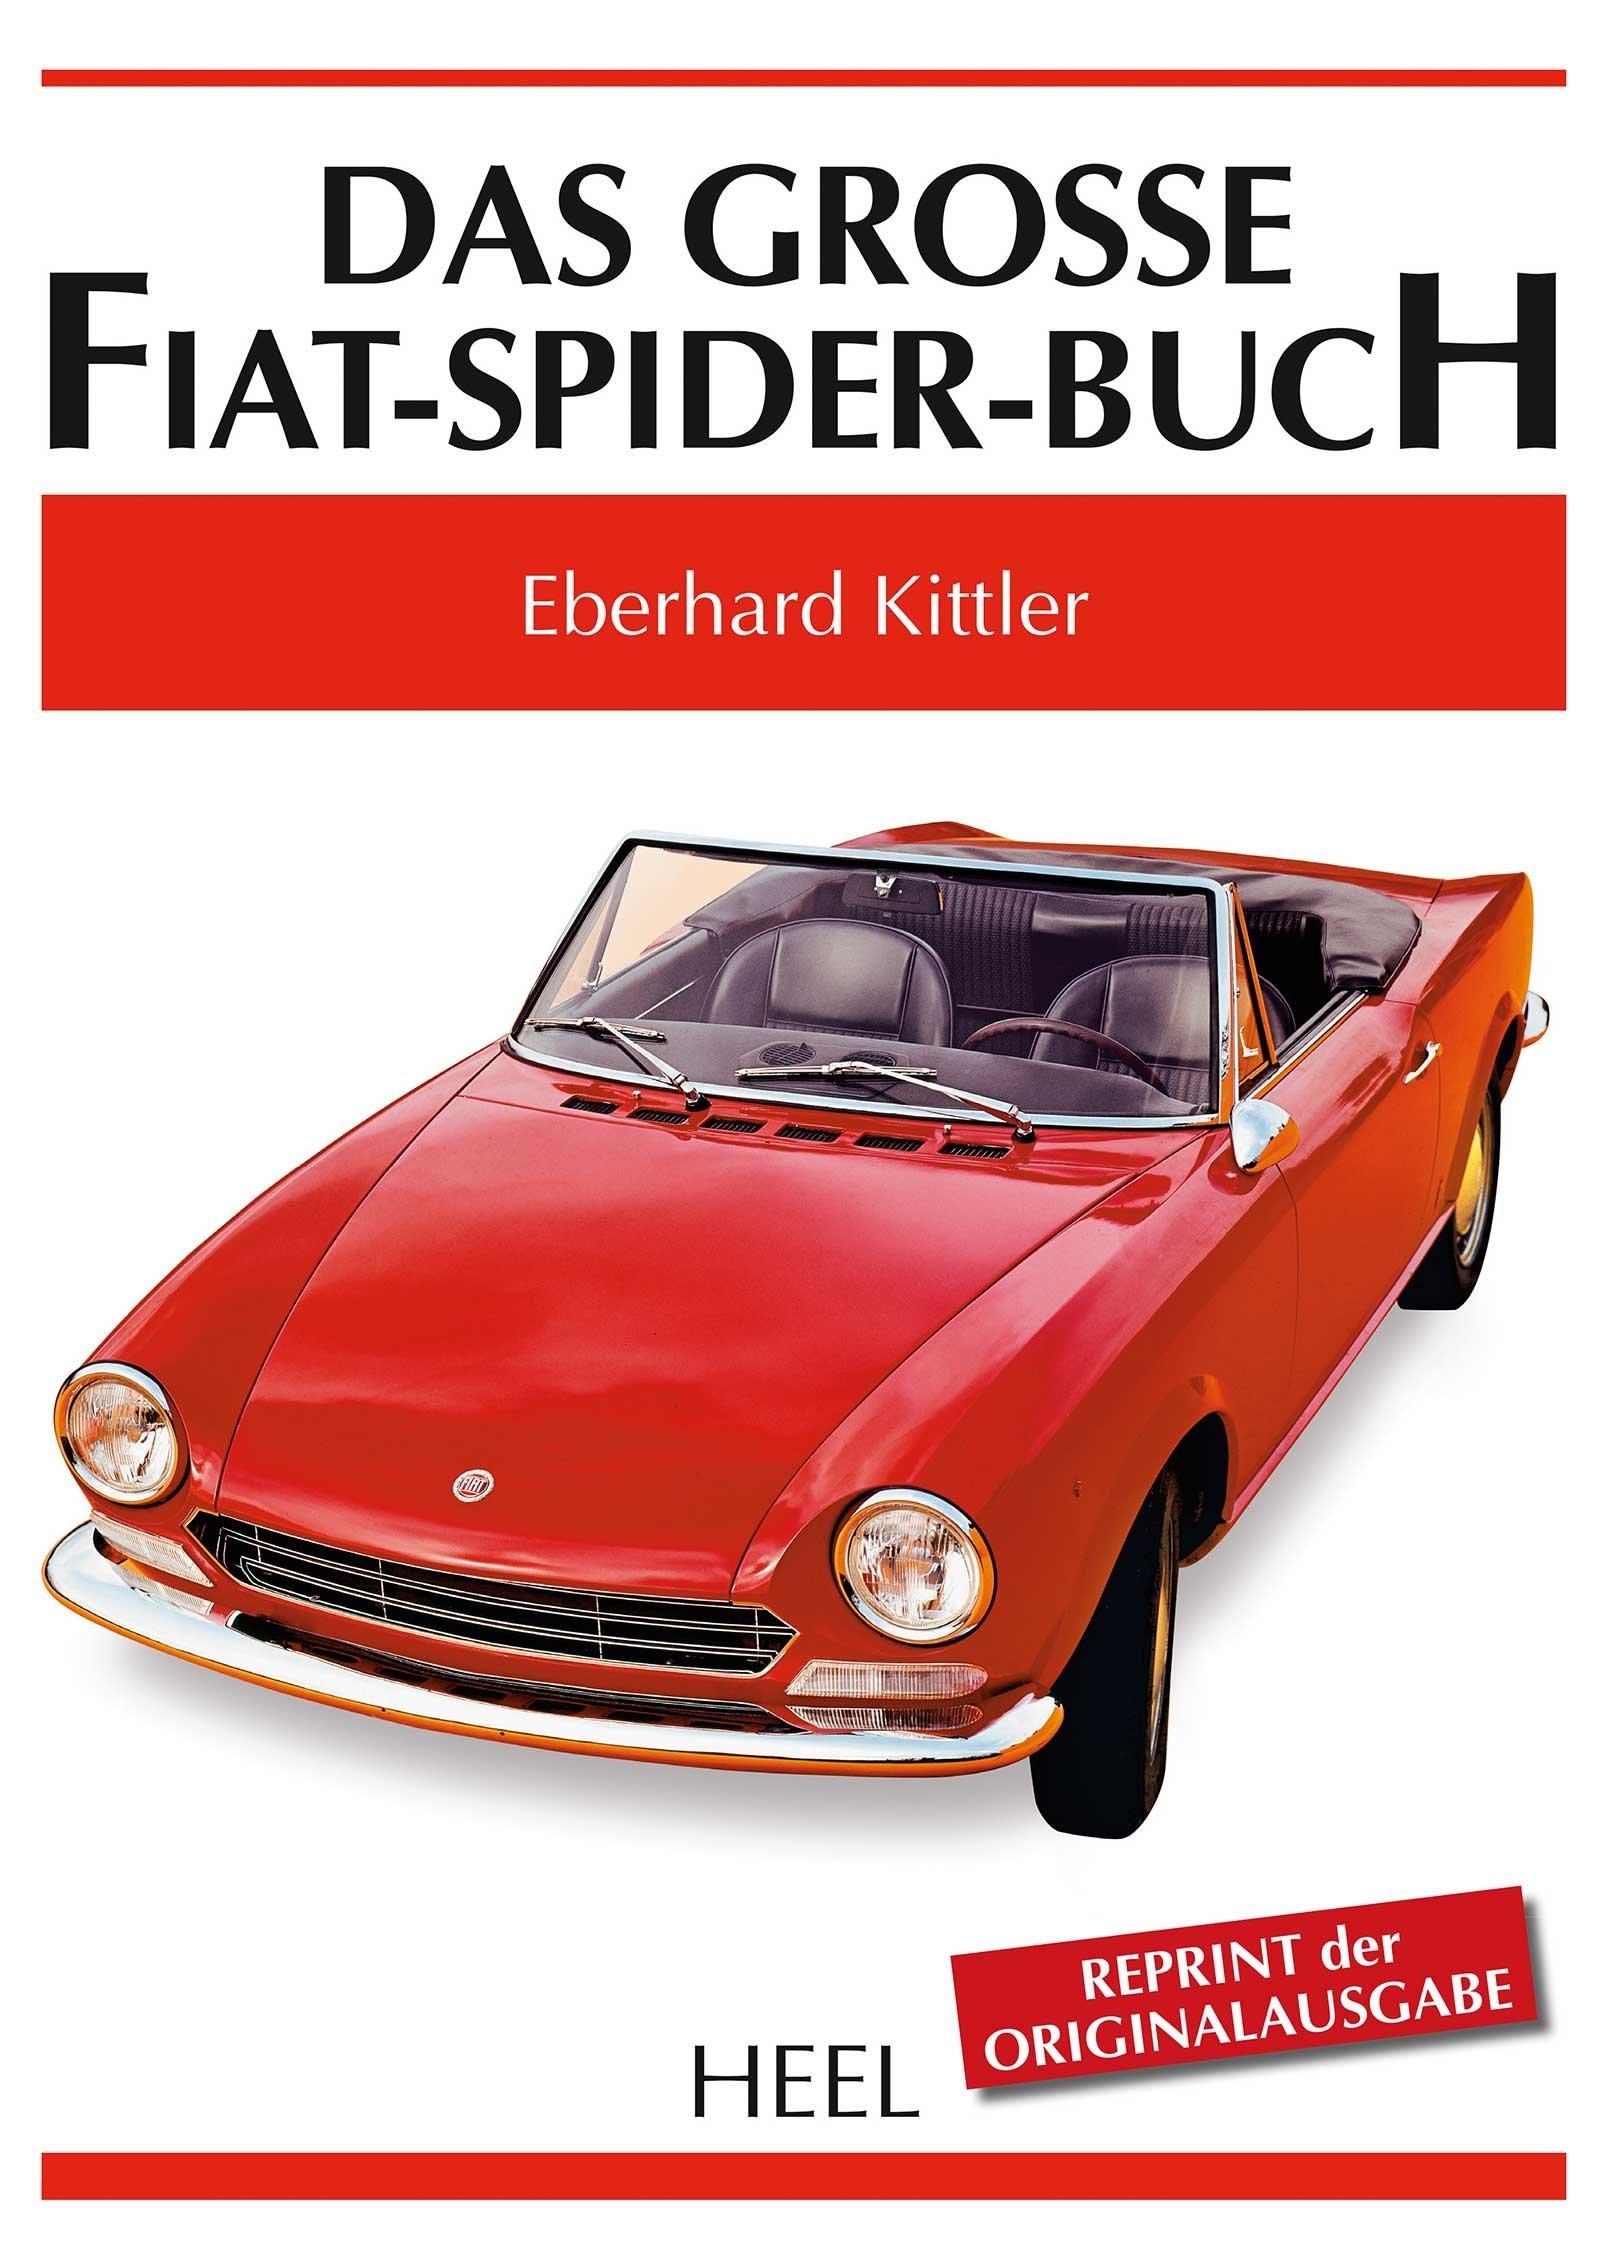 Das grosse Fiat-Spider-Buch